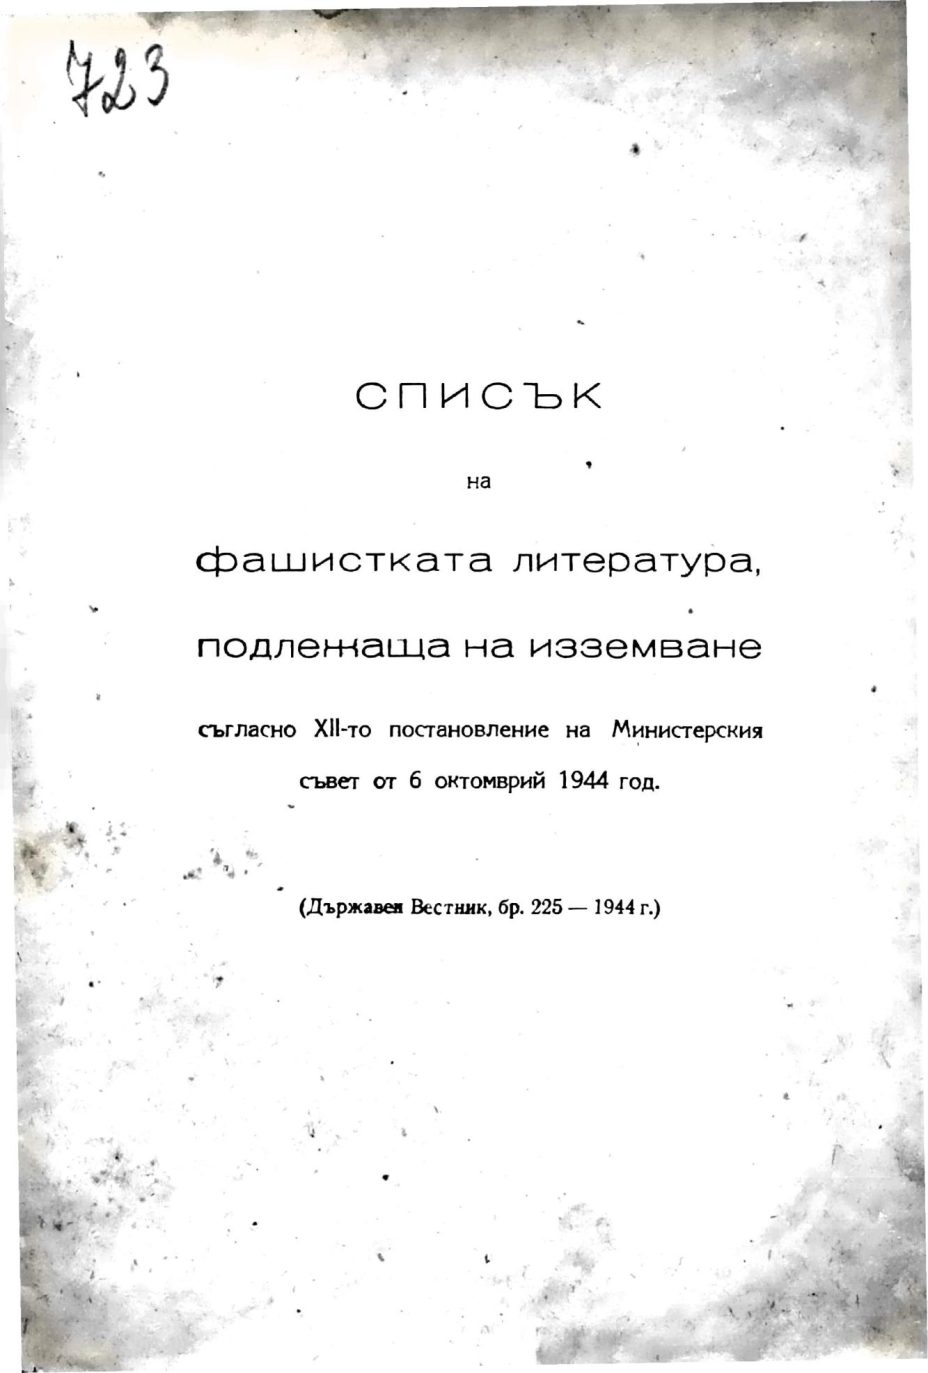 1944.10.06_Държавен Весник - Списък на фашистката литература, подлежаща на изземване; бр225; София